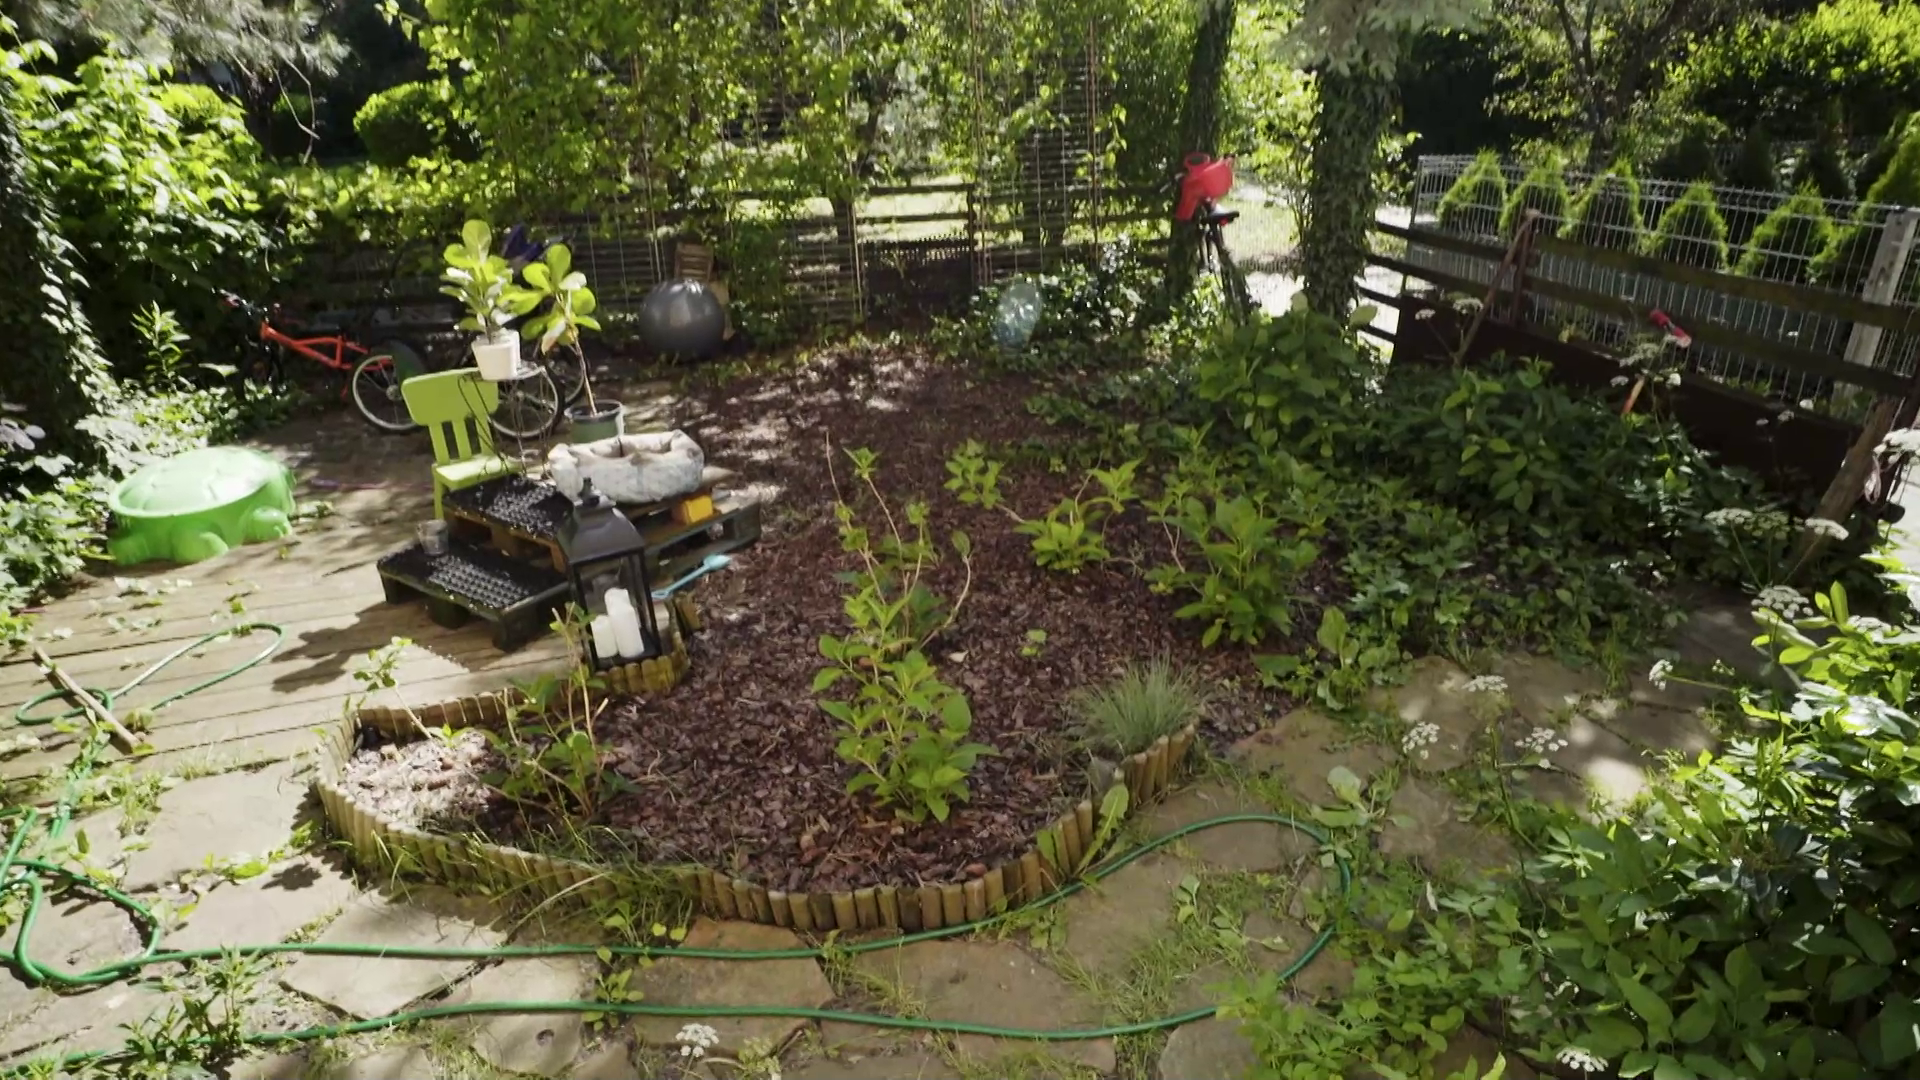 "Polowanie na ogród": w ogródku Kasi rządzą chwasty